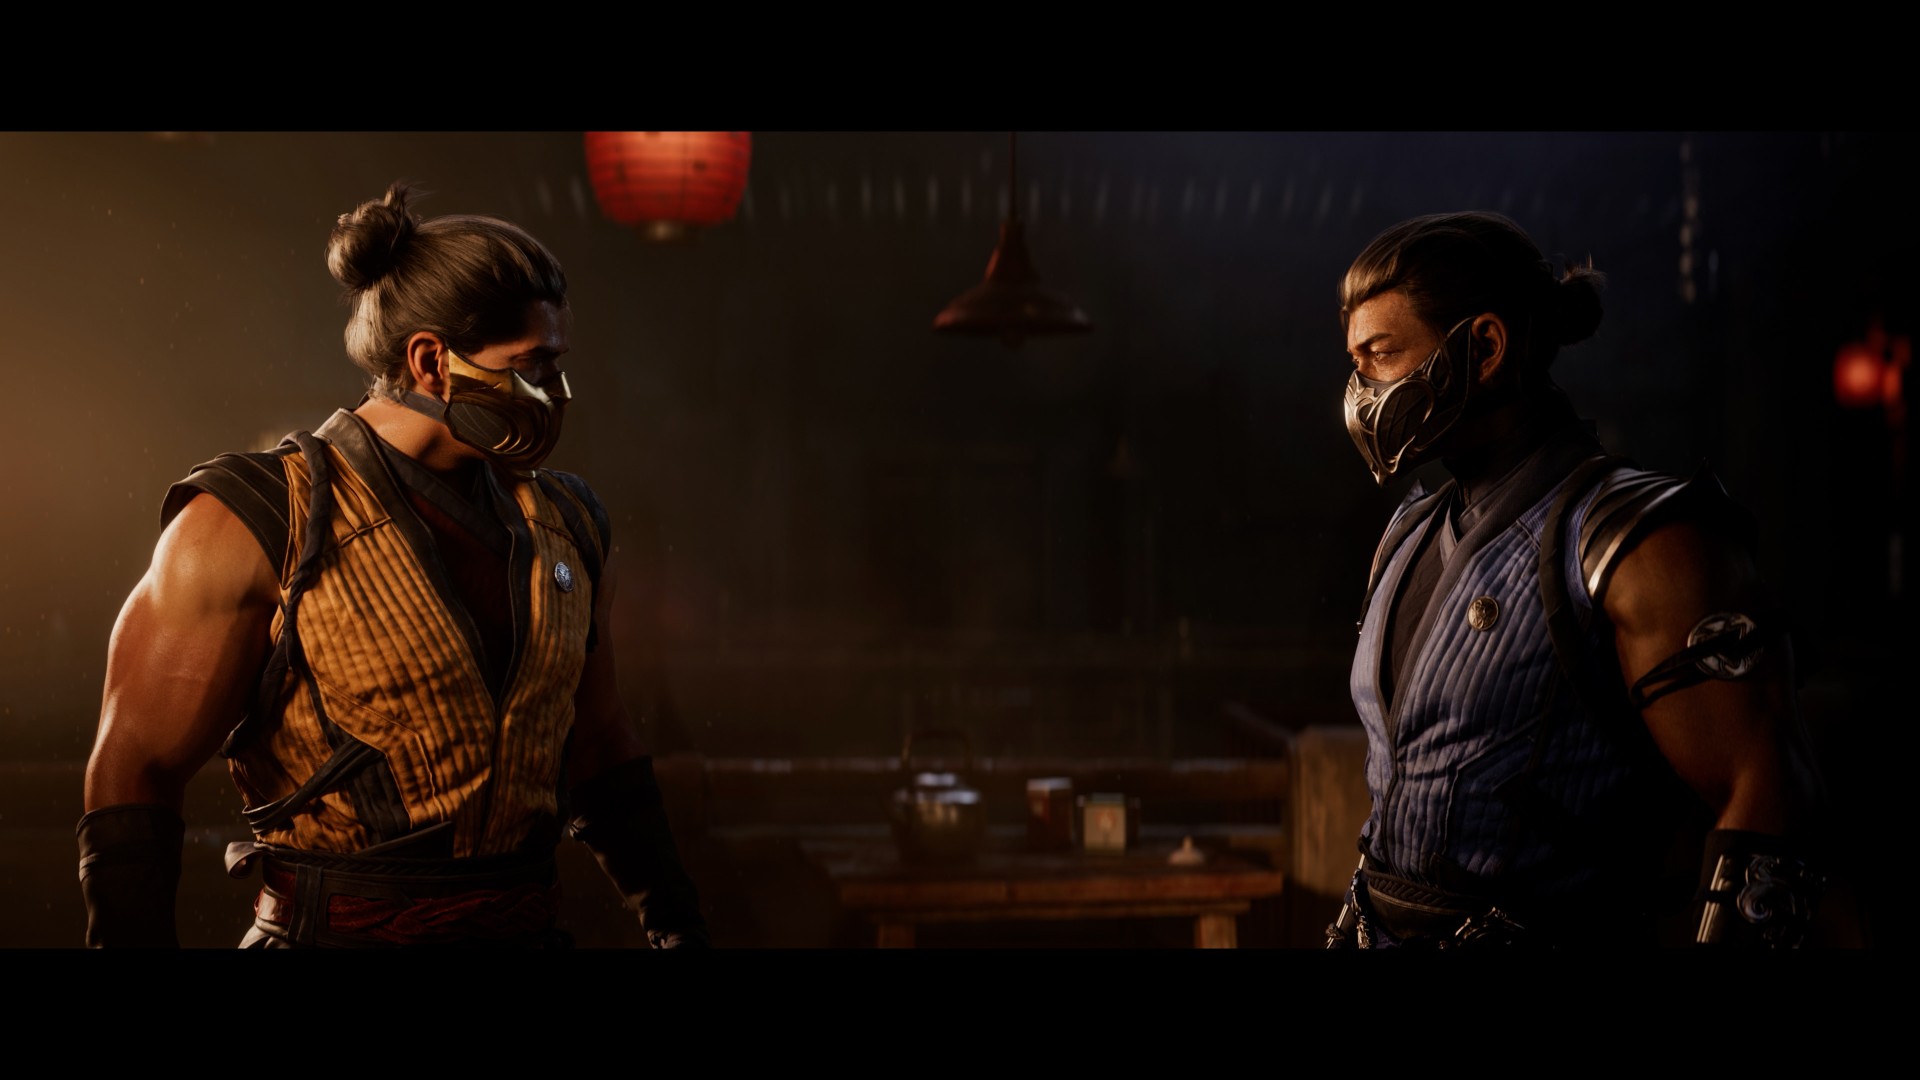 Mortal Kombat 1 Still Image From Trailer